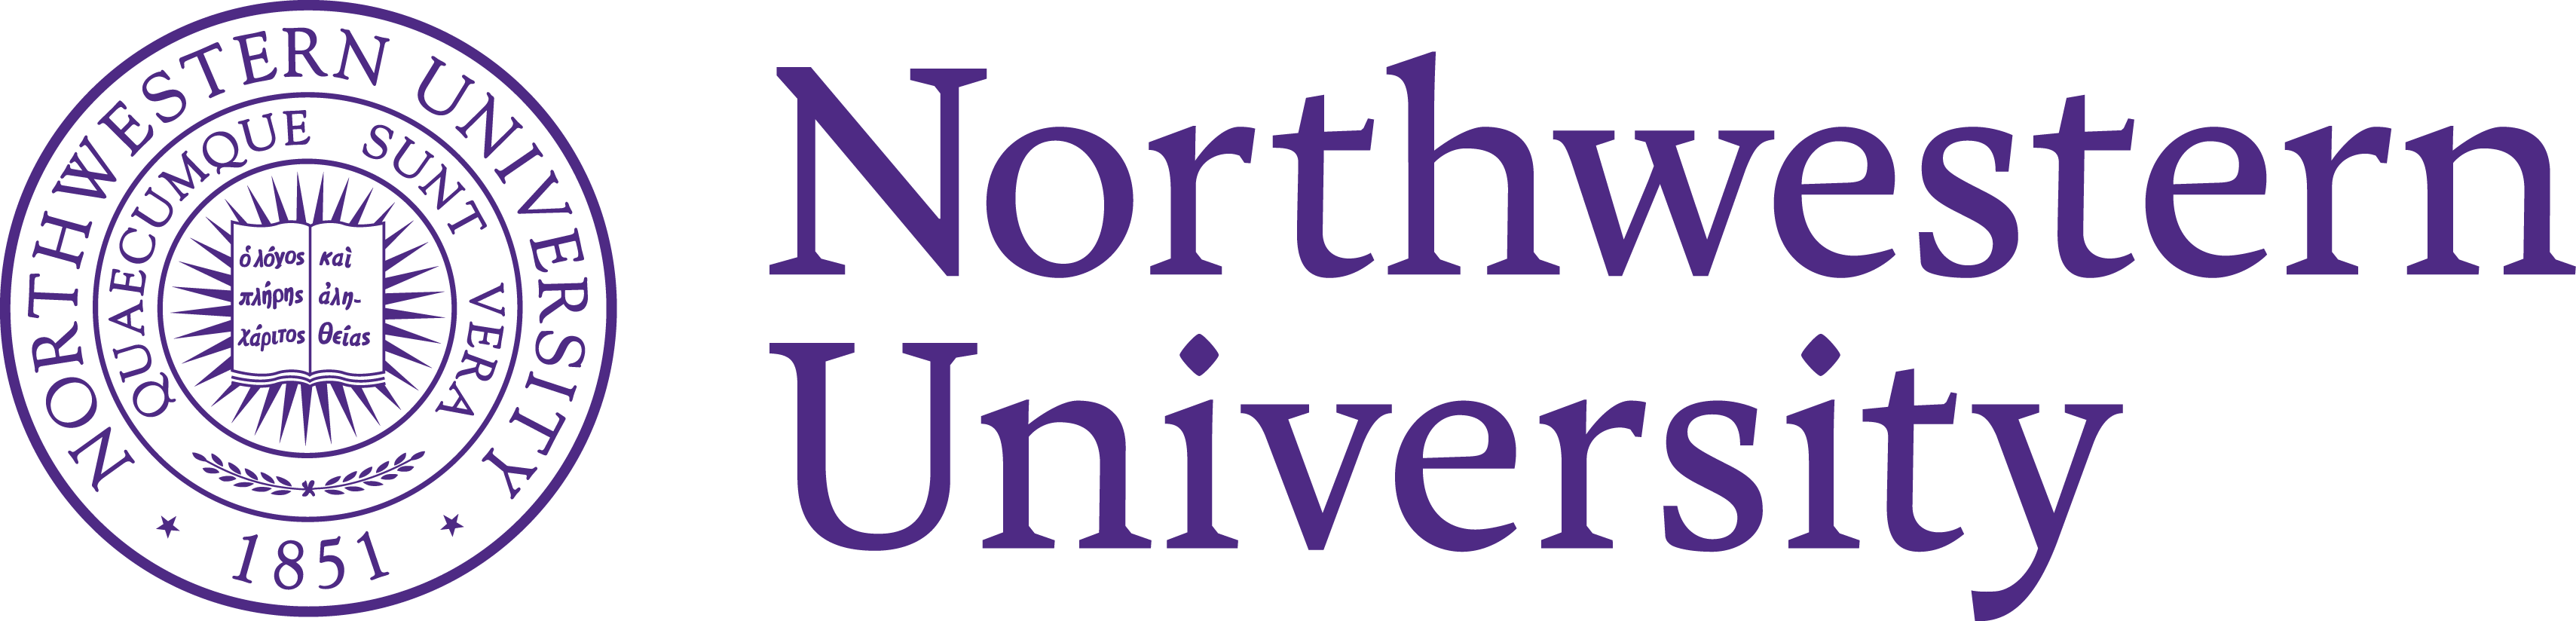 Northwestern U Logo - Northwestern University Logo and Seal - Brand Emblems, Company Logo ...